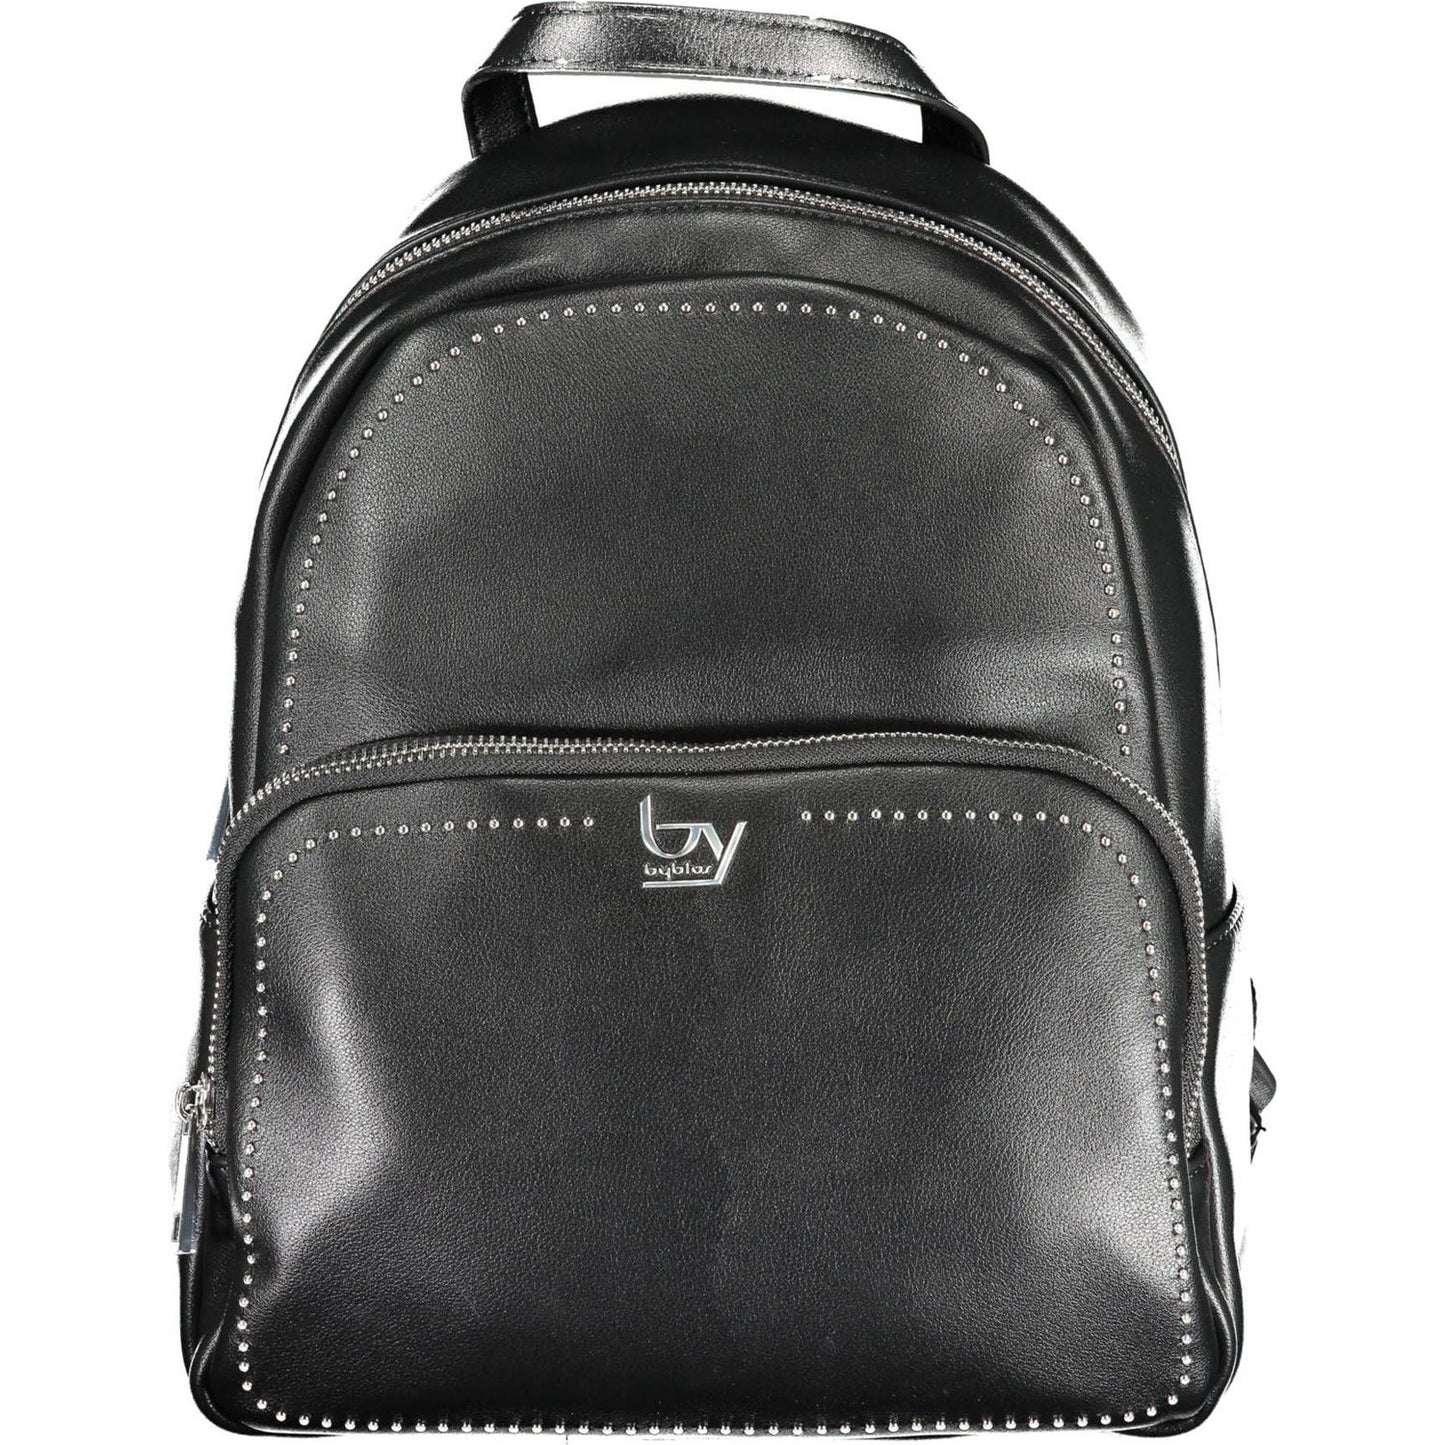 BYBLOS Elegant Designer Black Backpack with Contrasting Details elegant-designer-black-backpack-with-contrasting-details